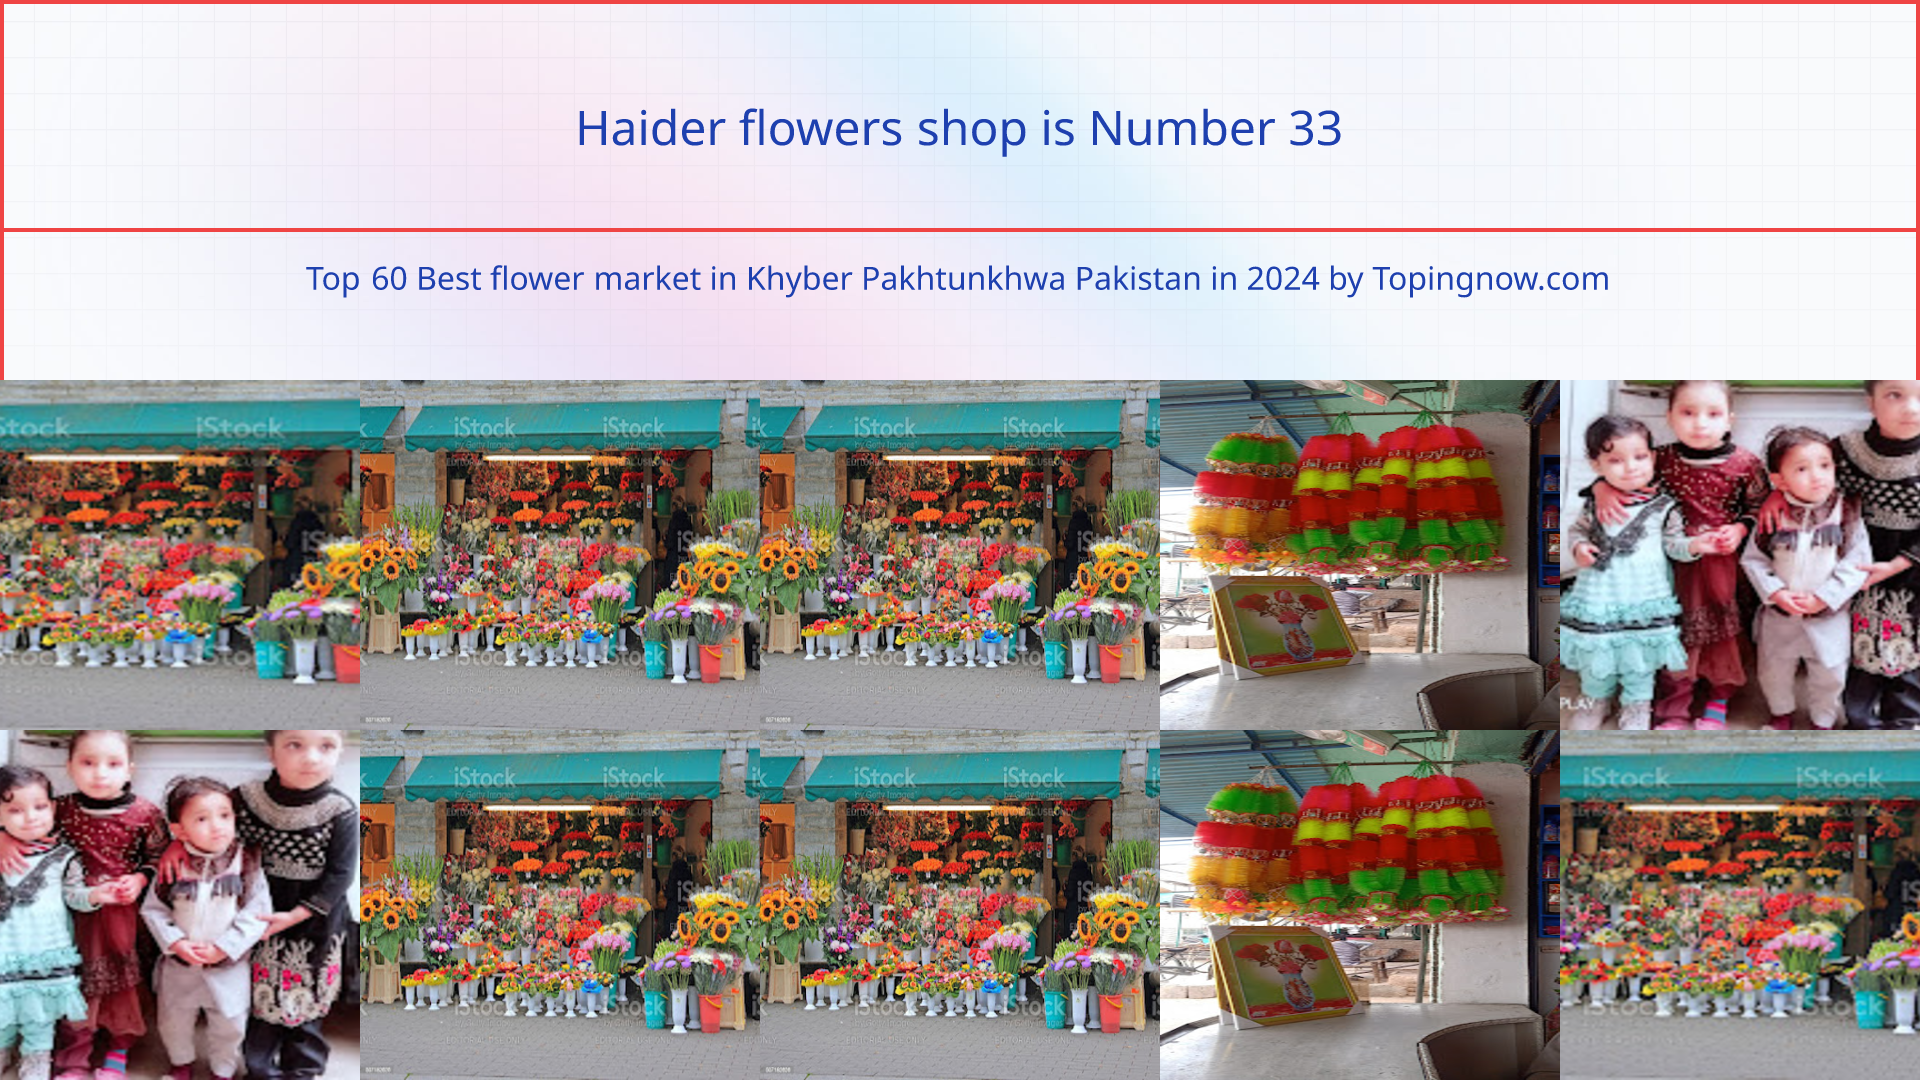 Haider flowers shop: Top 60 Best flower market in Khyber Pakhtunkhwa Pakistan in 2024